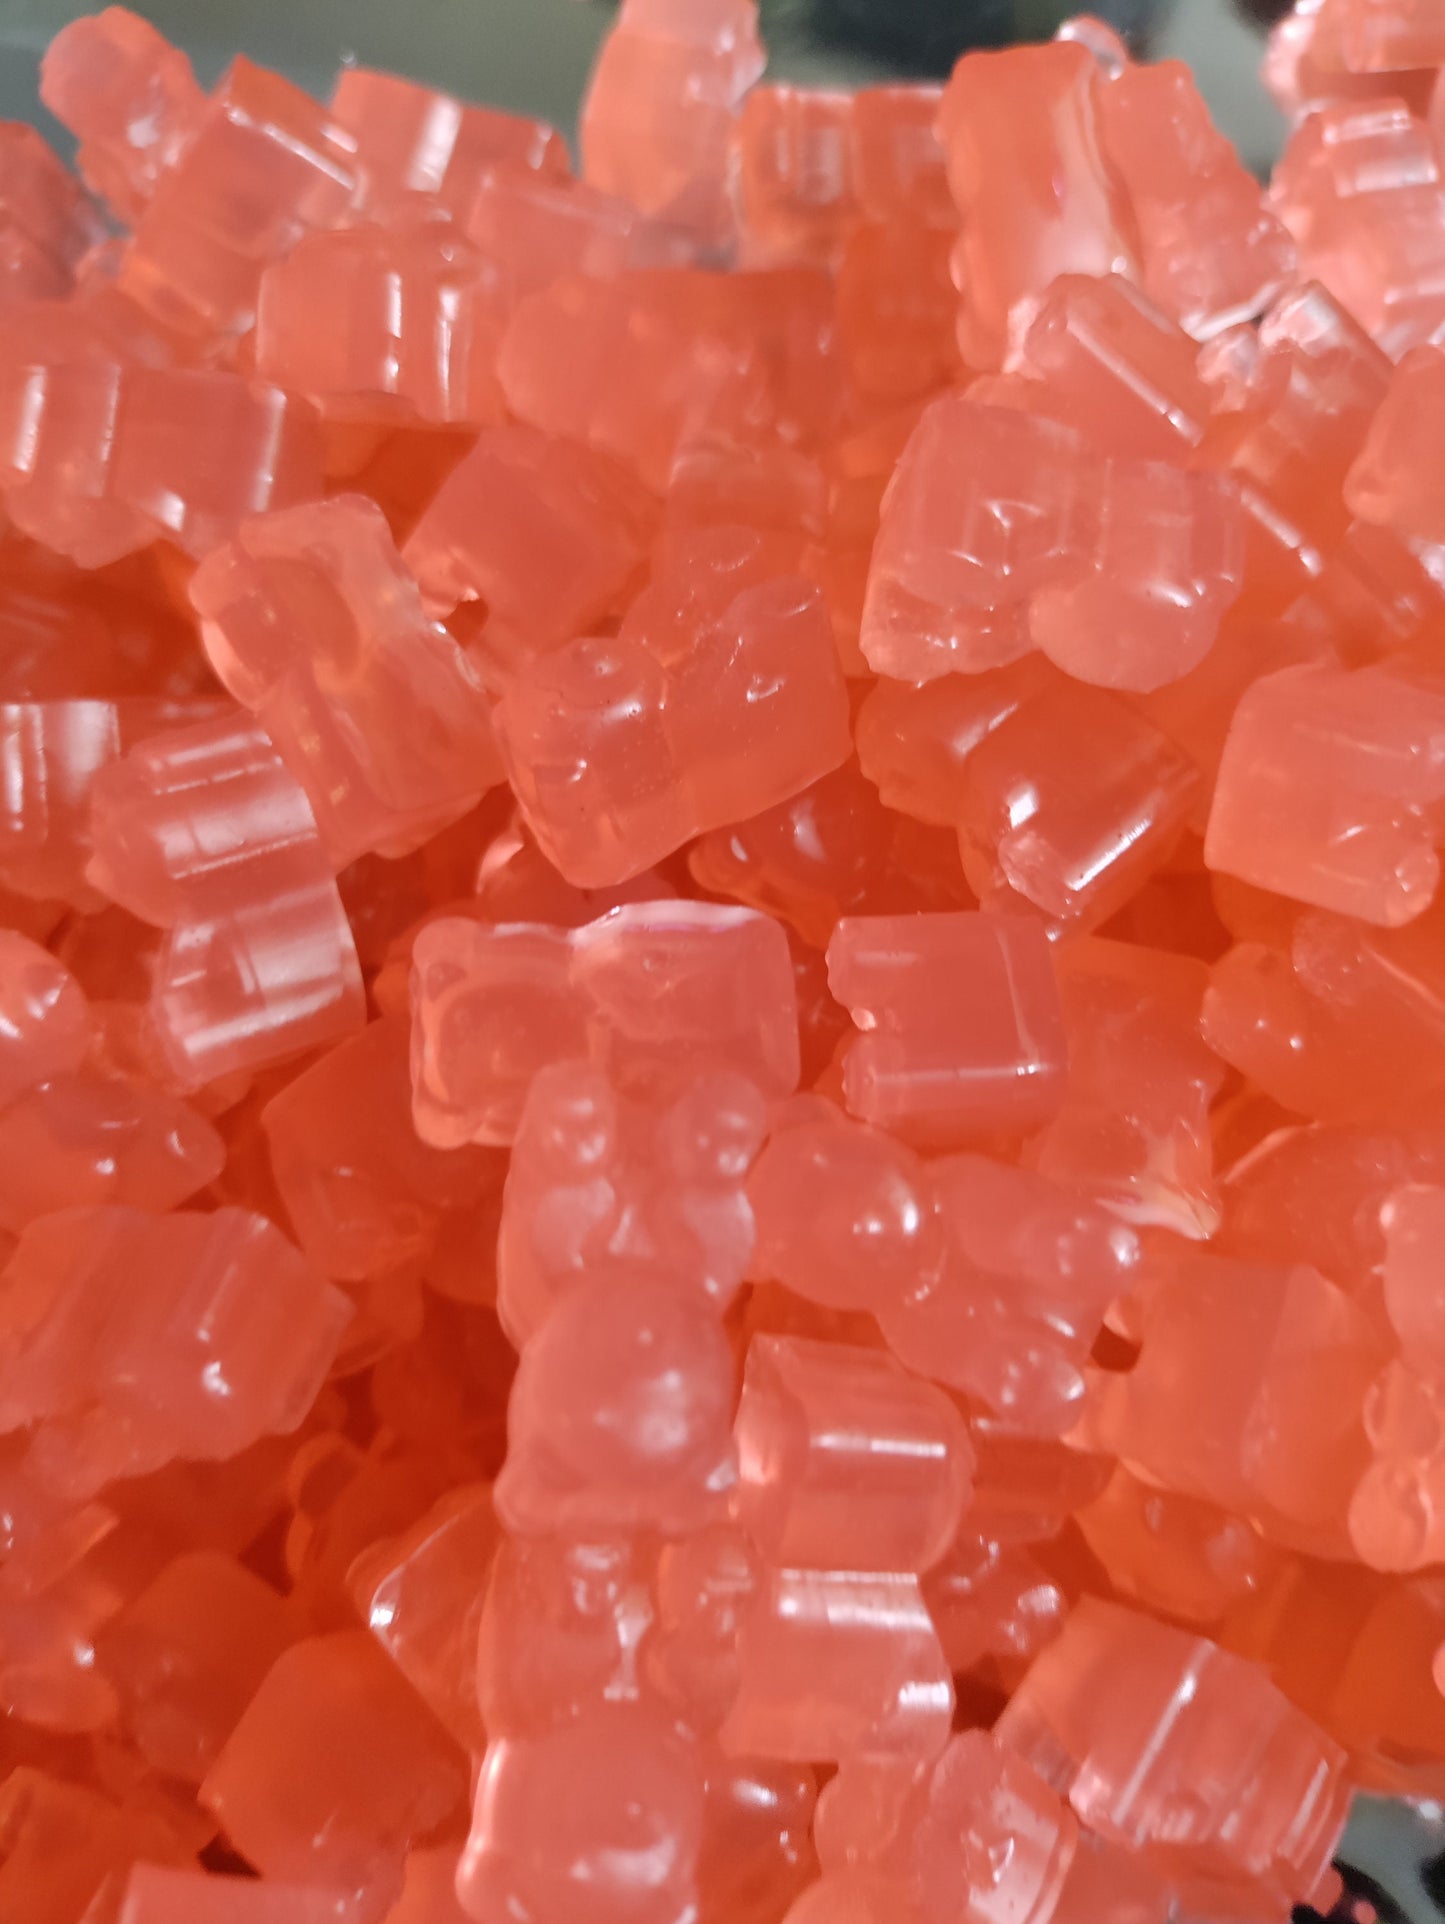 Pink lemonade wine infused gummy bears